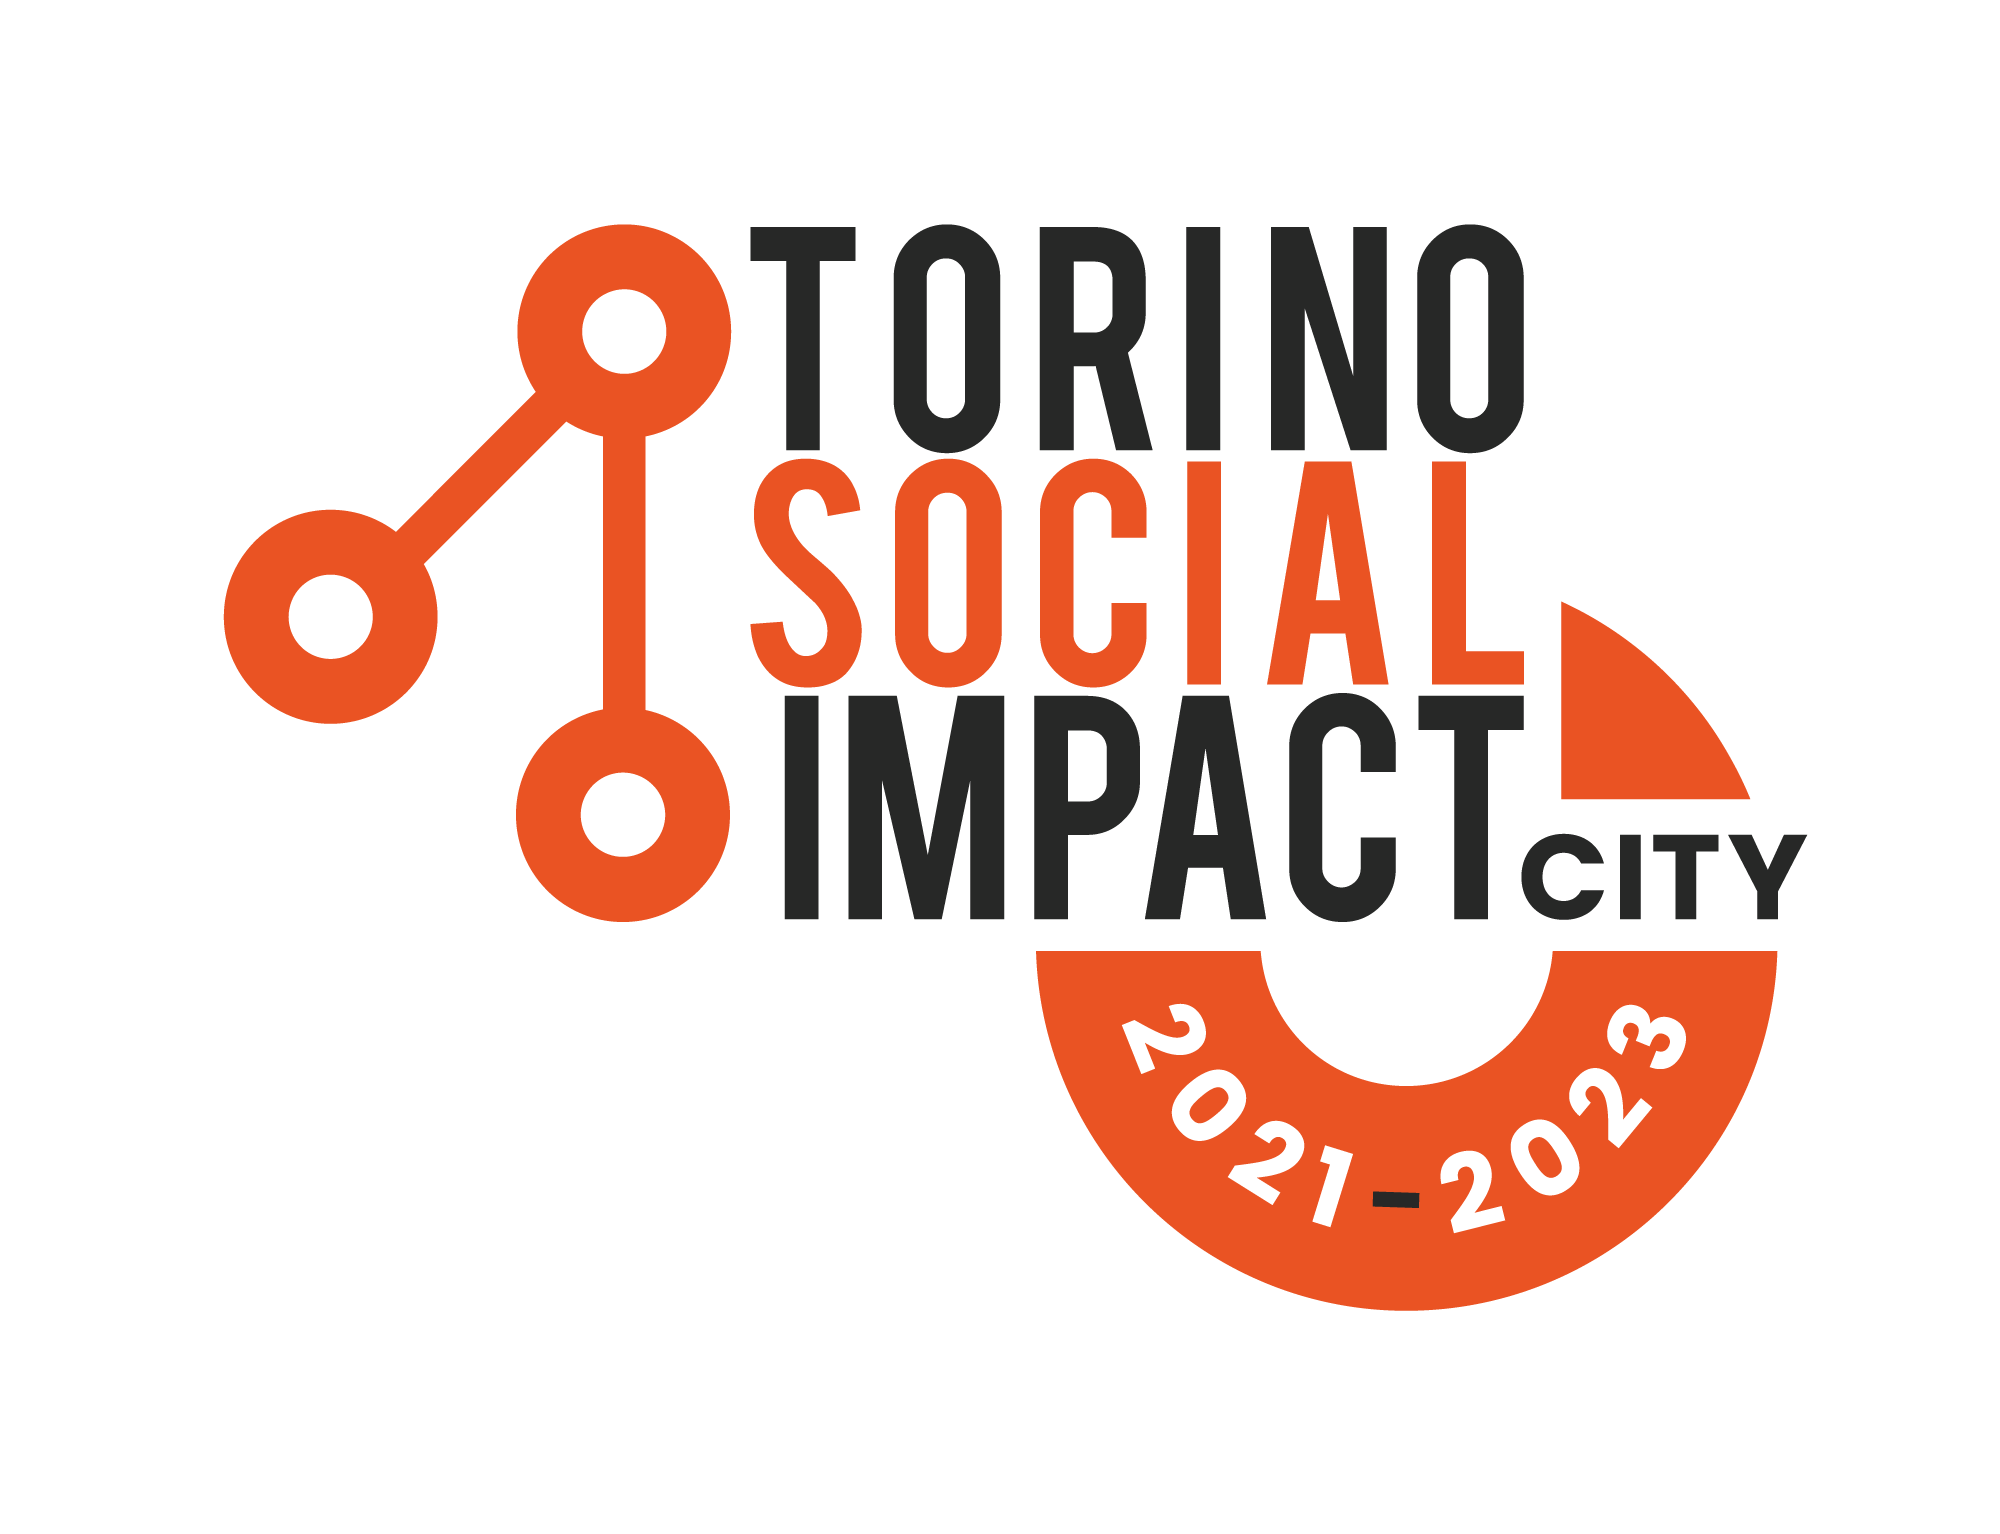 Torino Social Impact entra a far parte di Social Value Italia!